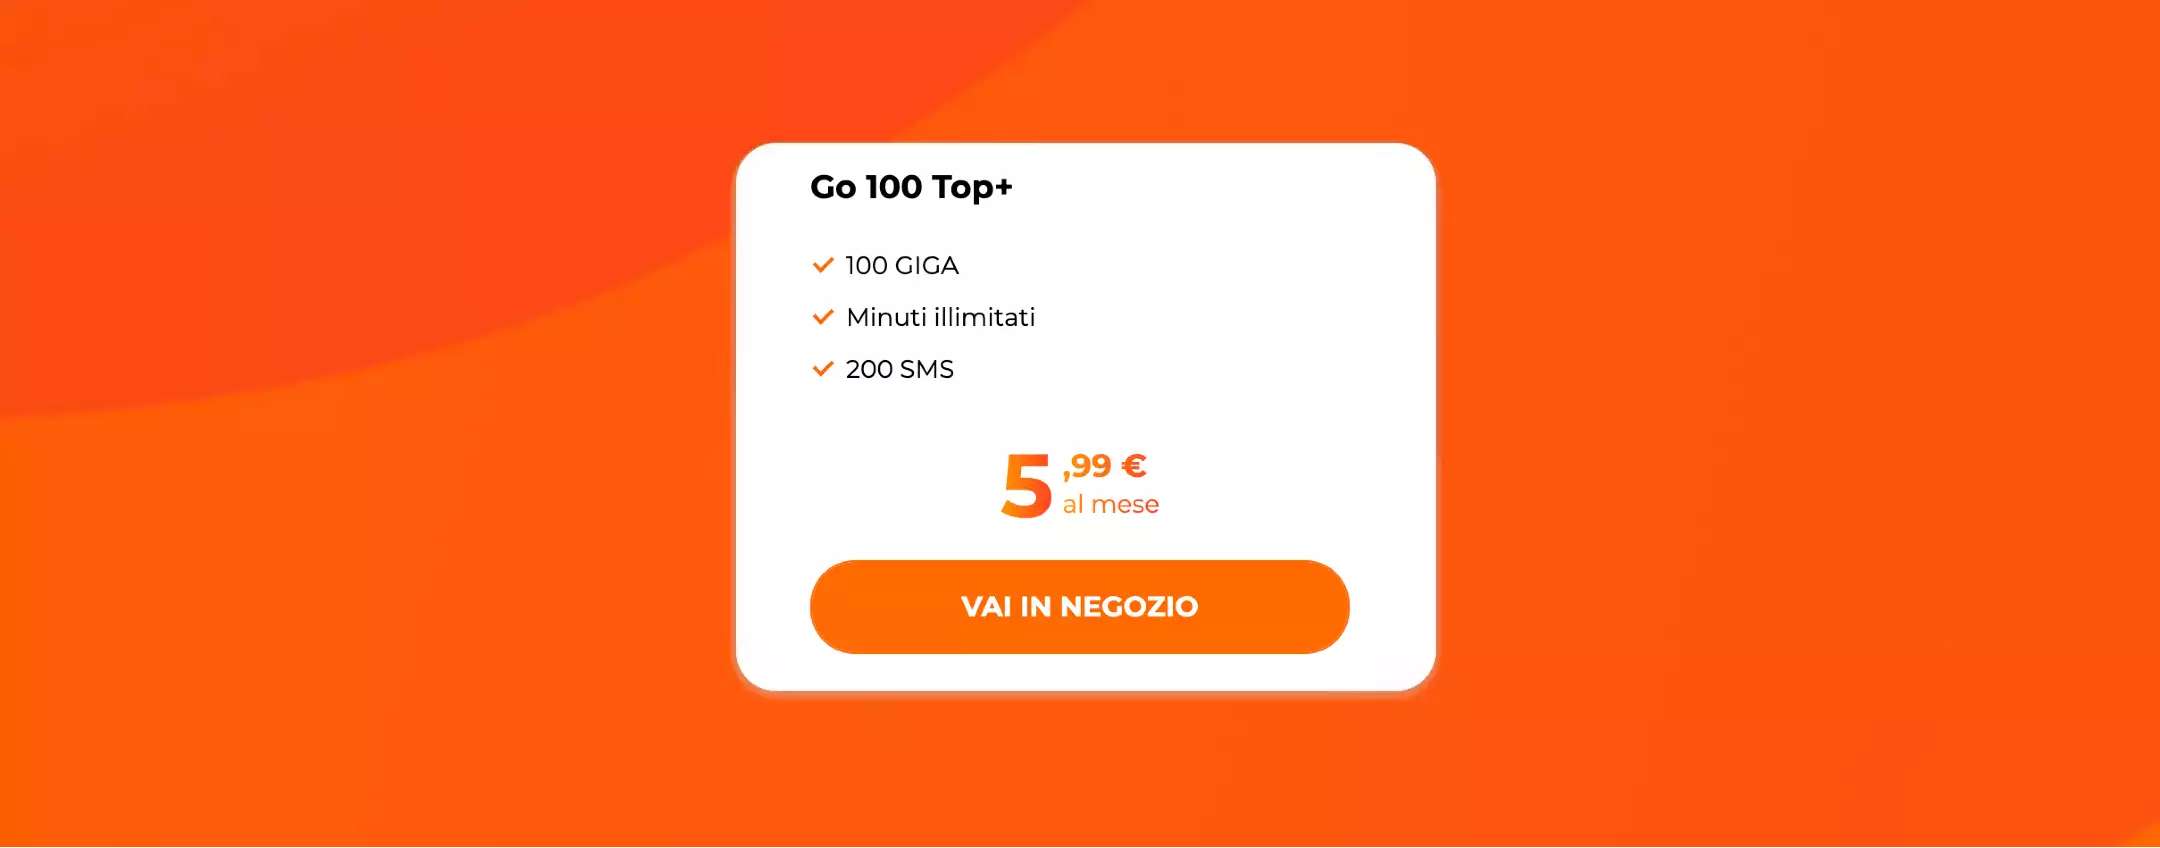 GO 100 Top+: winback WINDTRE con 100GB a 5,99€